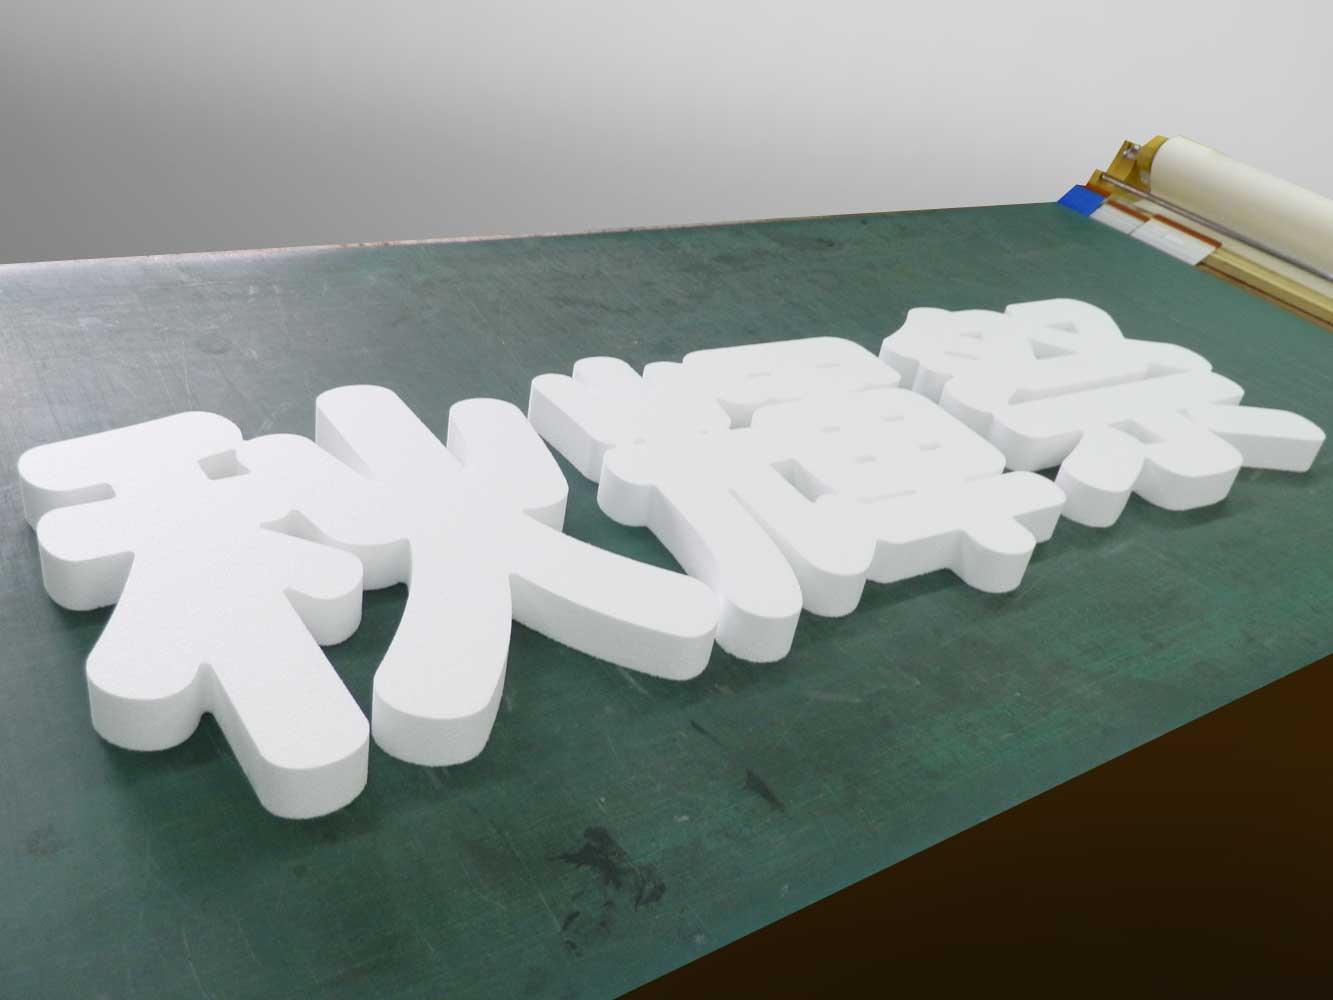 【発泡スチロール切り文字】神奈川県の高校の文化祭用切り文字看板の製作事例をご紹介します。